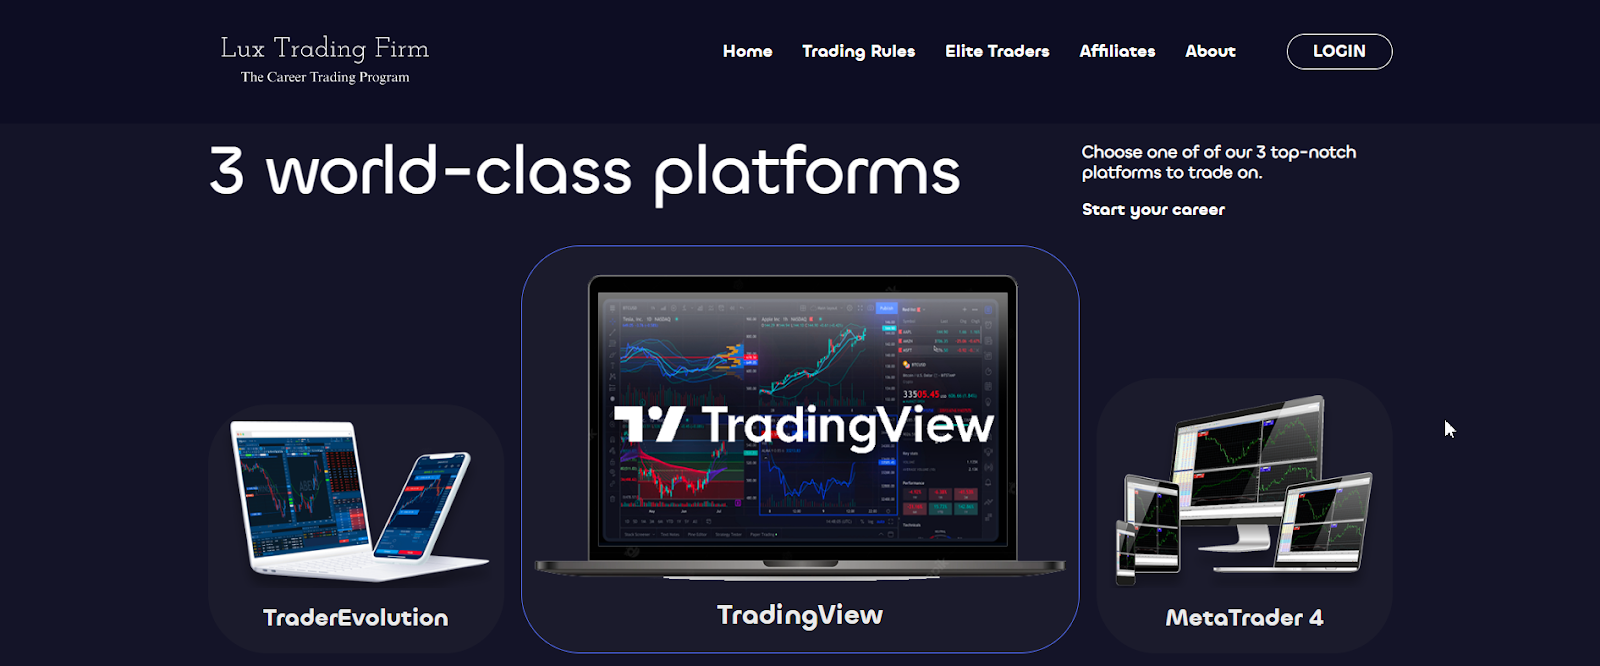 Обзор Lux Trading Firm - Типы торговых платформ